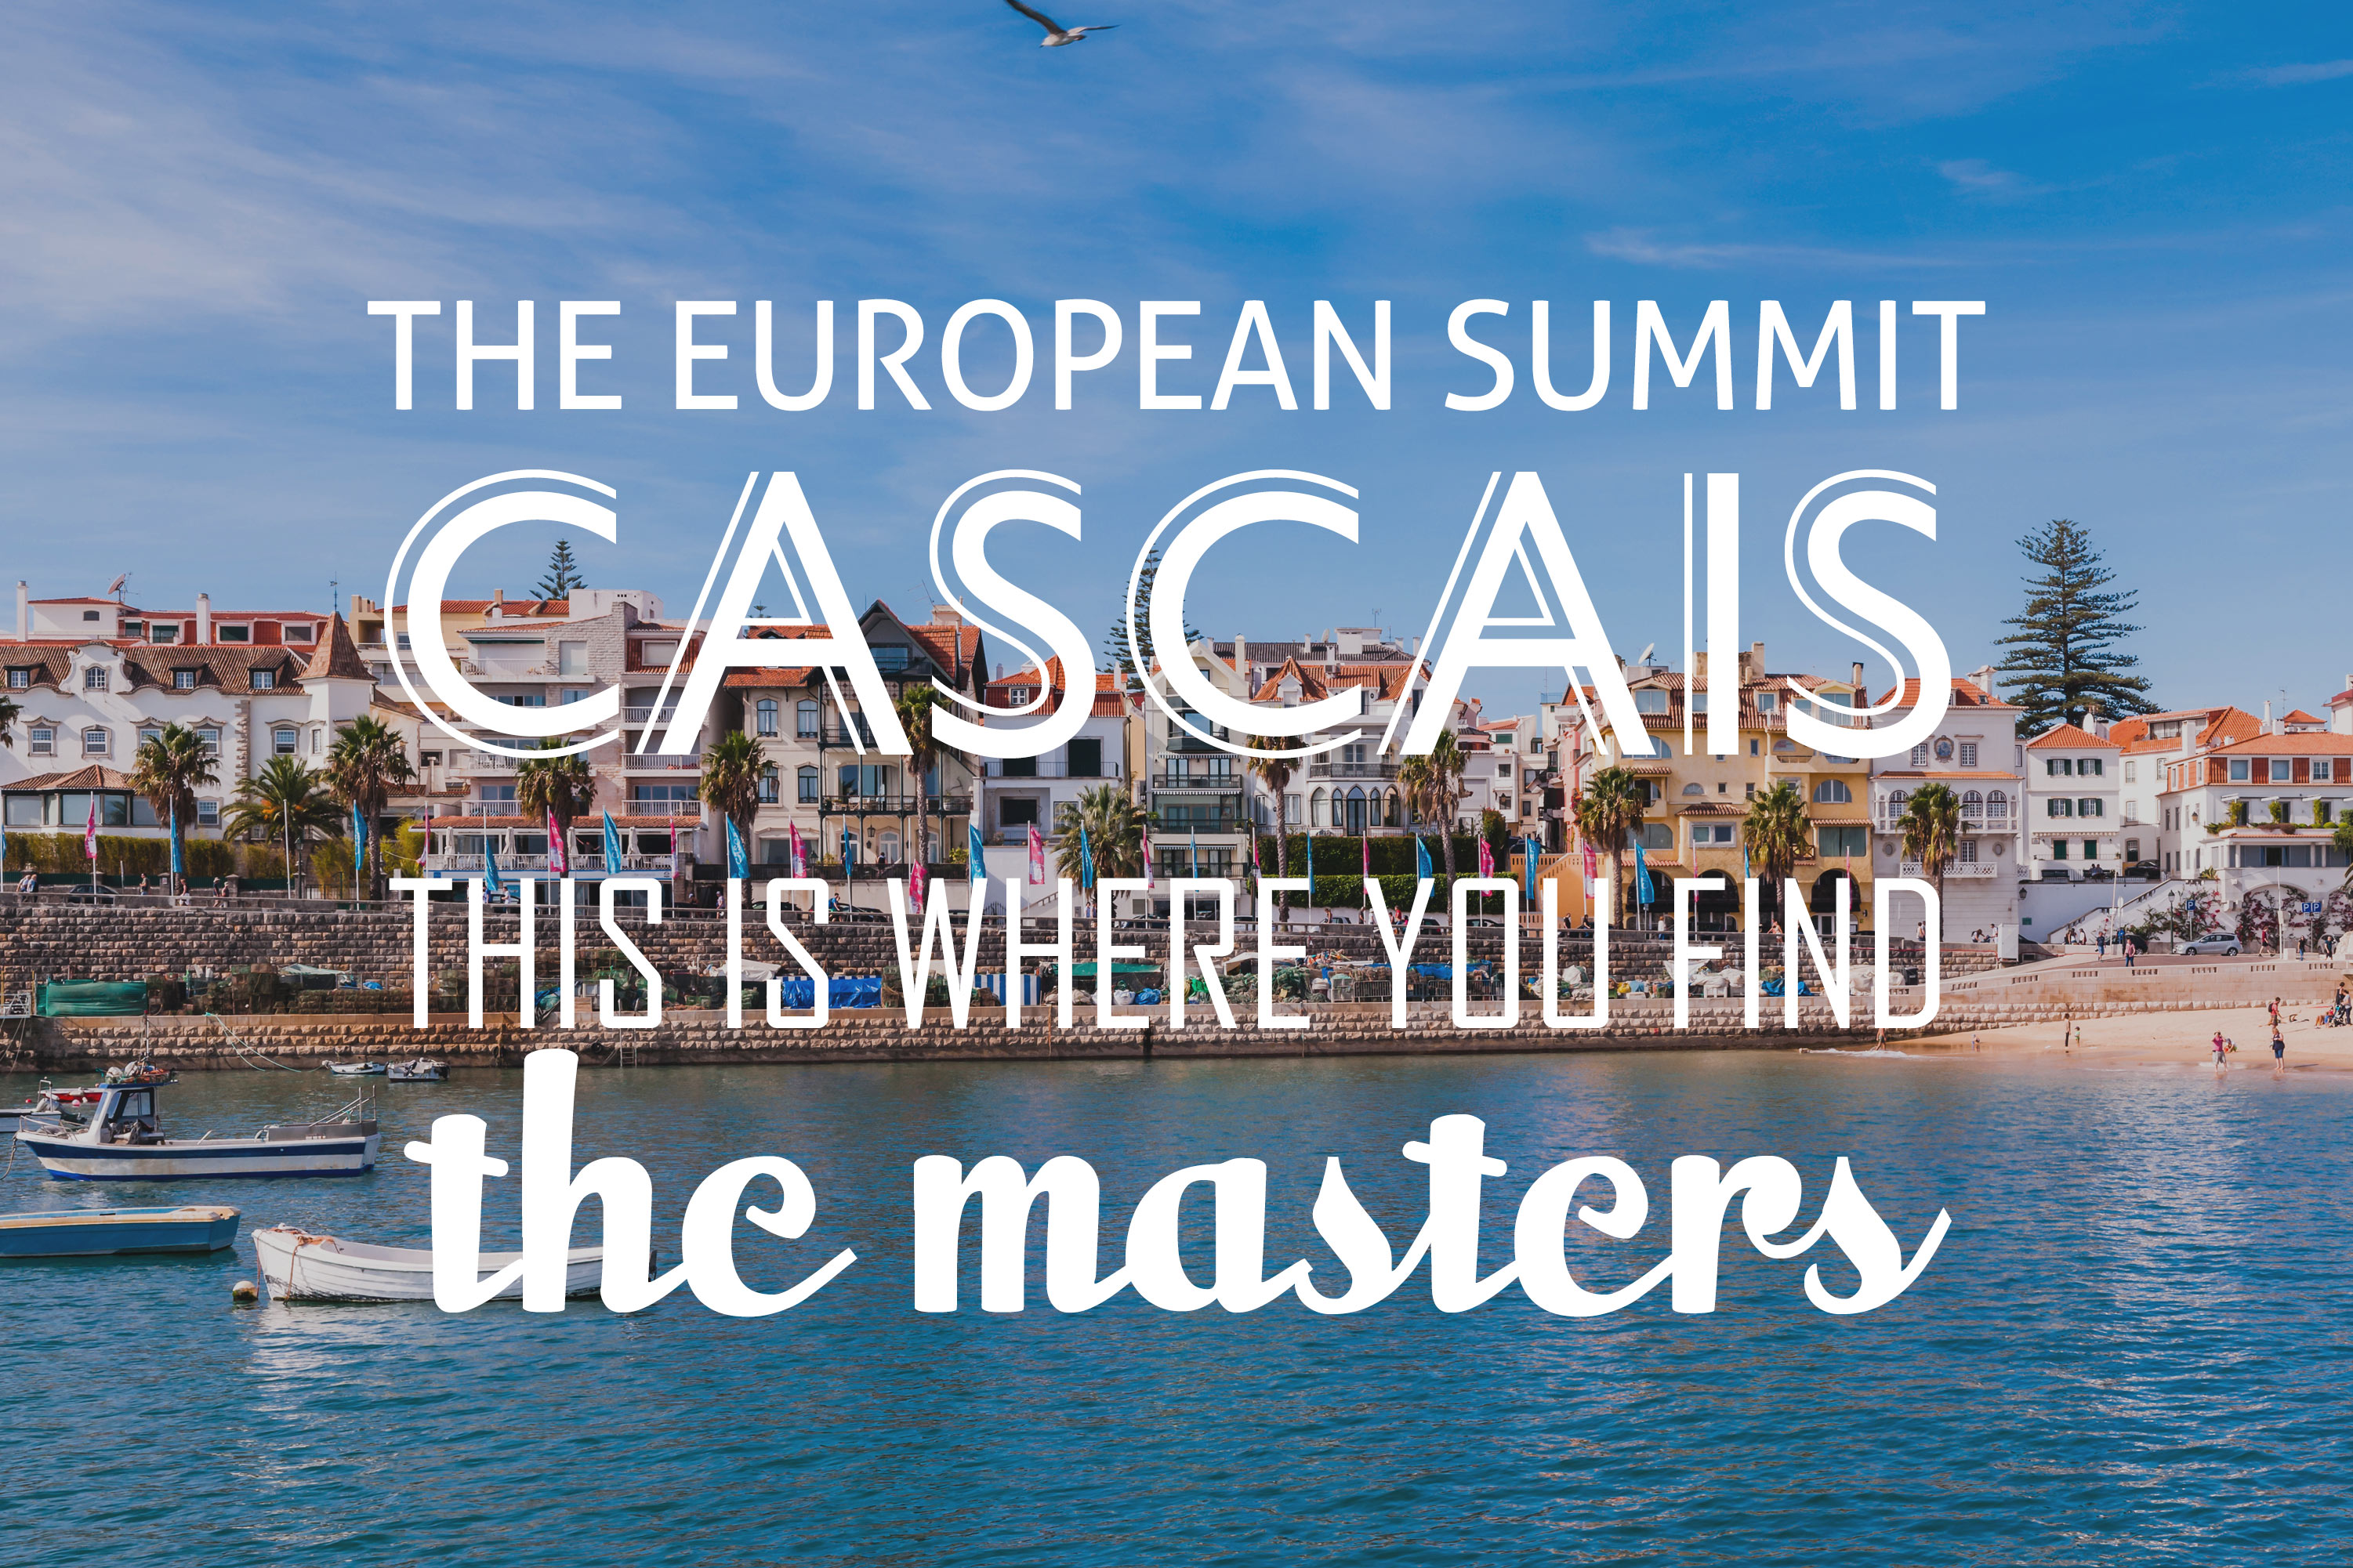 The European Summit Cascais